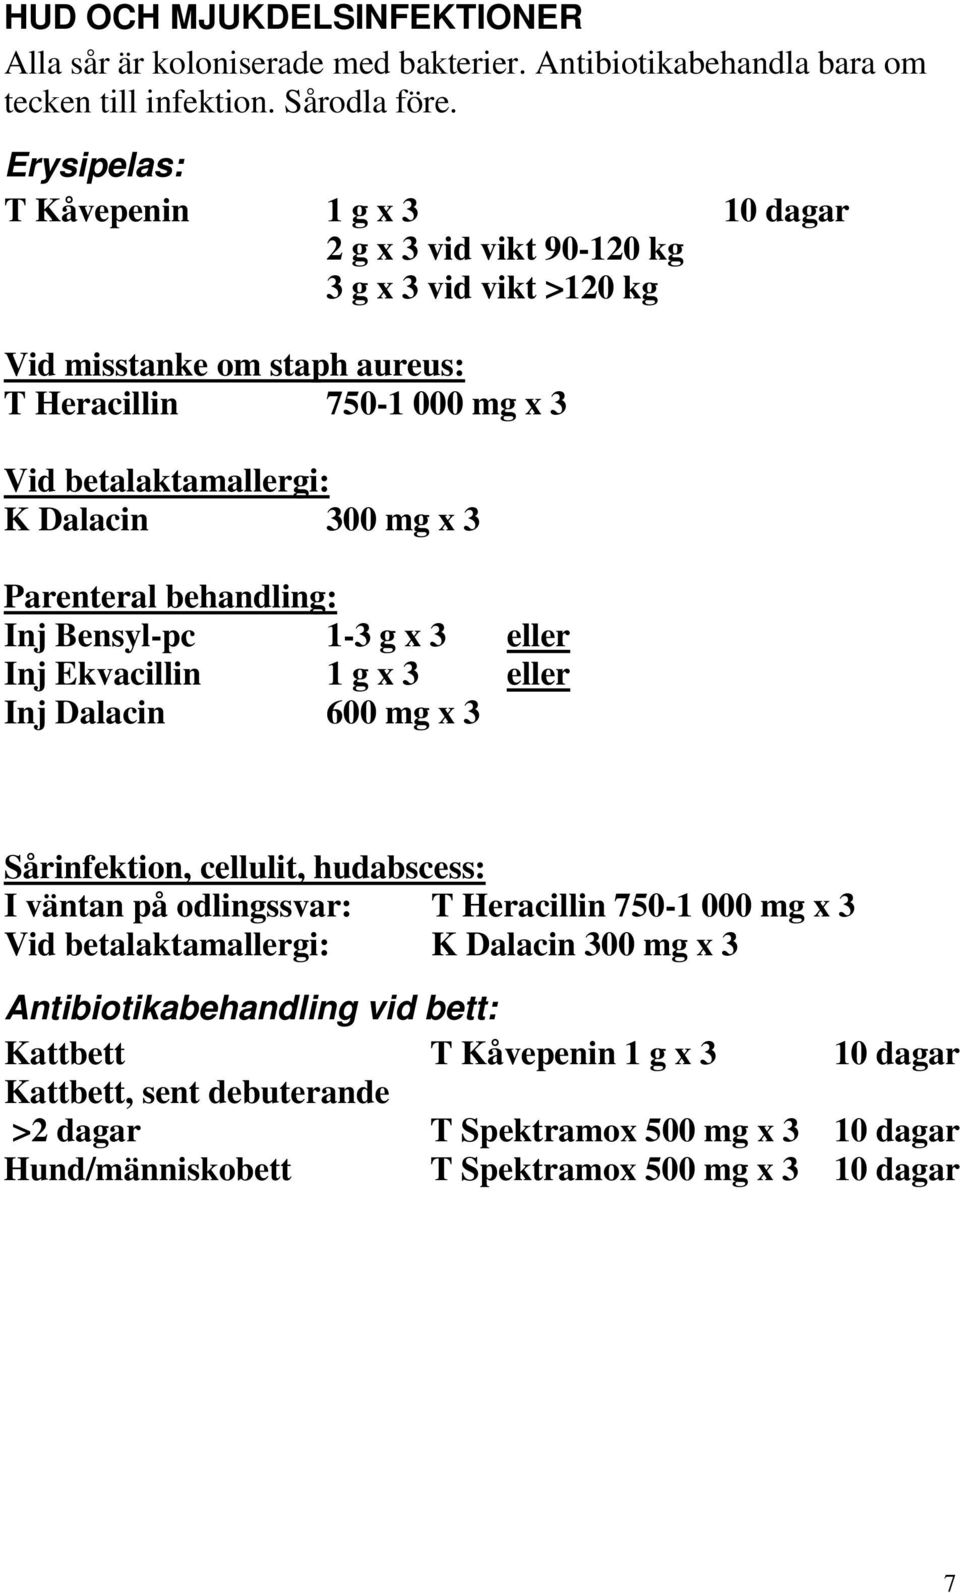 mg x 3 Parenteral behandling: Inj Bensyl-pc 1-3 g x 3 eller Inj Ekvacillin 1 g x 3 eller Inj Dalacin 600 mg x 3 Sårinfektion, cellulit, hudabscess: I väntan på odlingssvar: T Heracillin